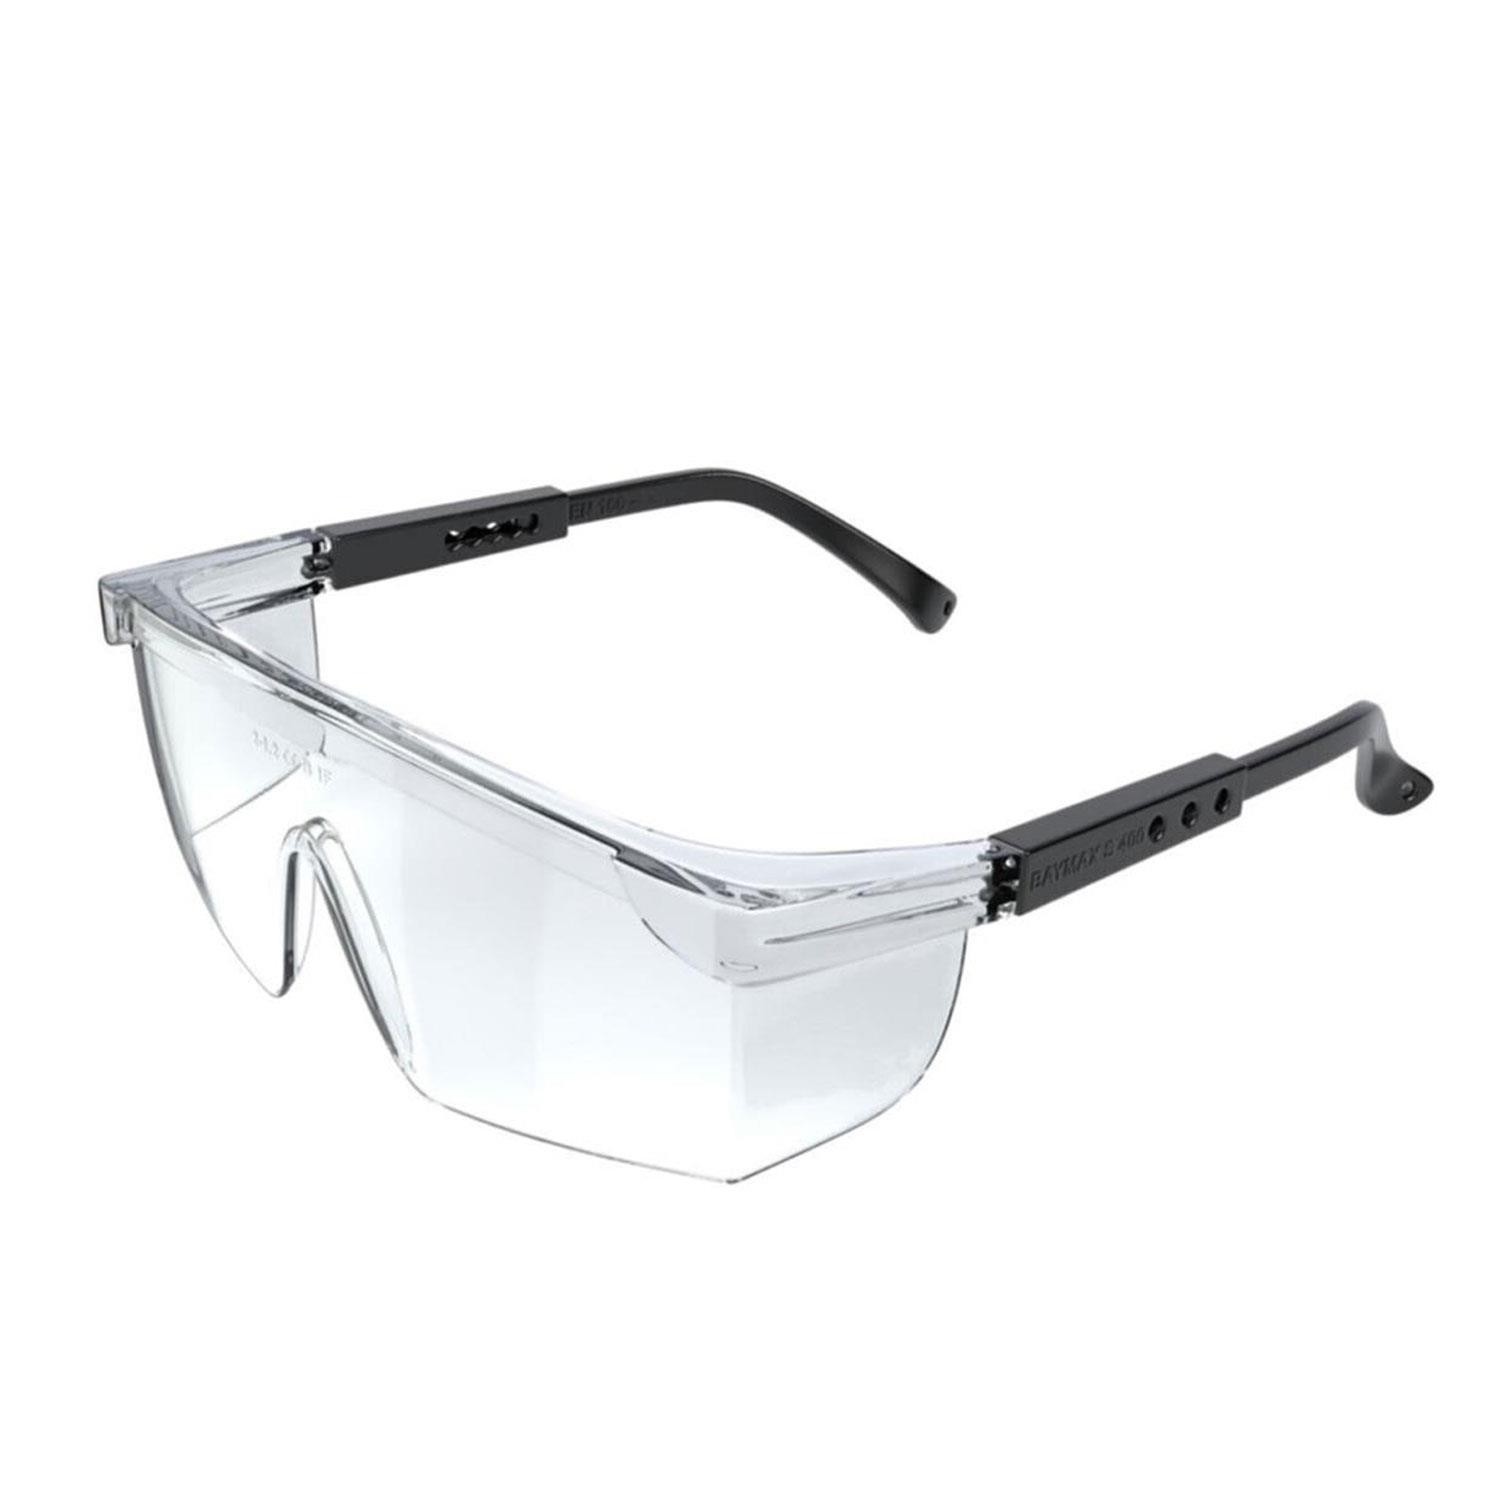 İş Güvenlik Gözlüğü Antifog Laborant Koruyucu Çapak Gözlük Şeffaf (12 ADET)